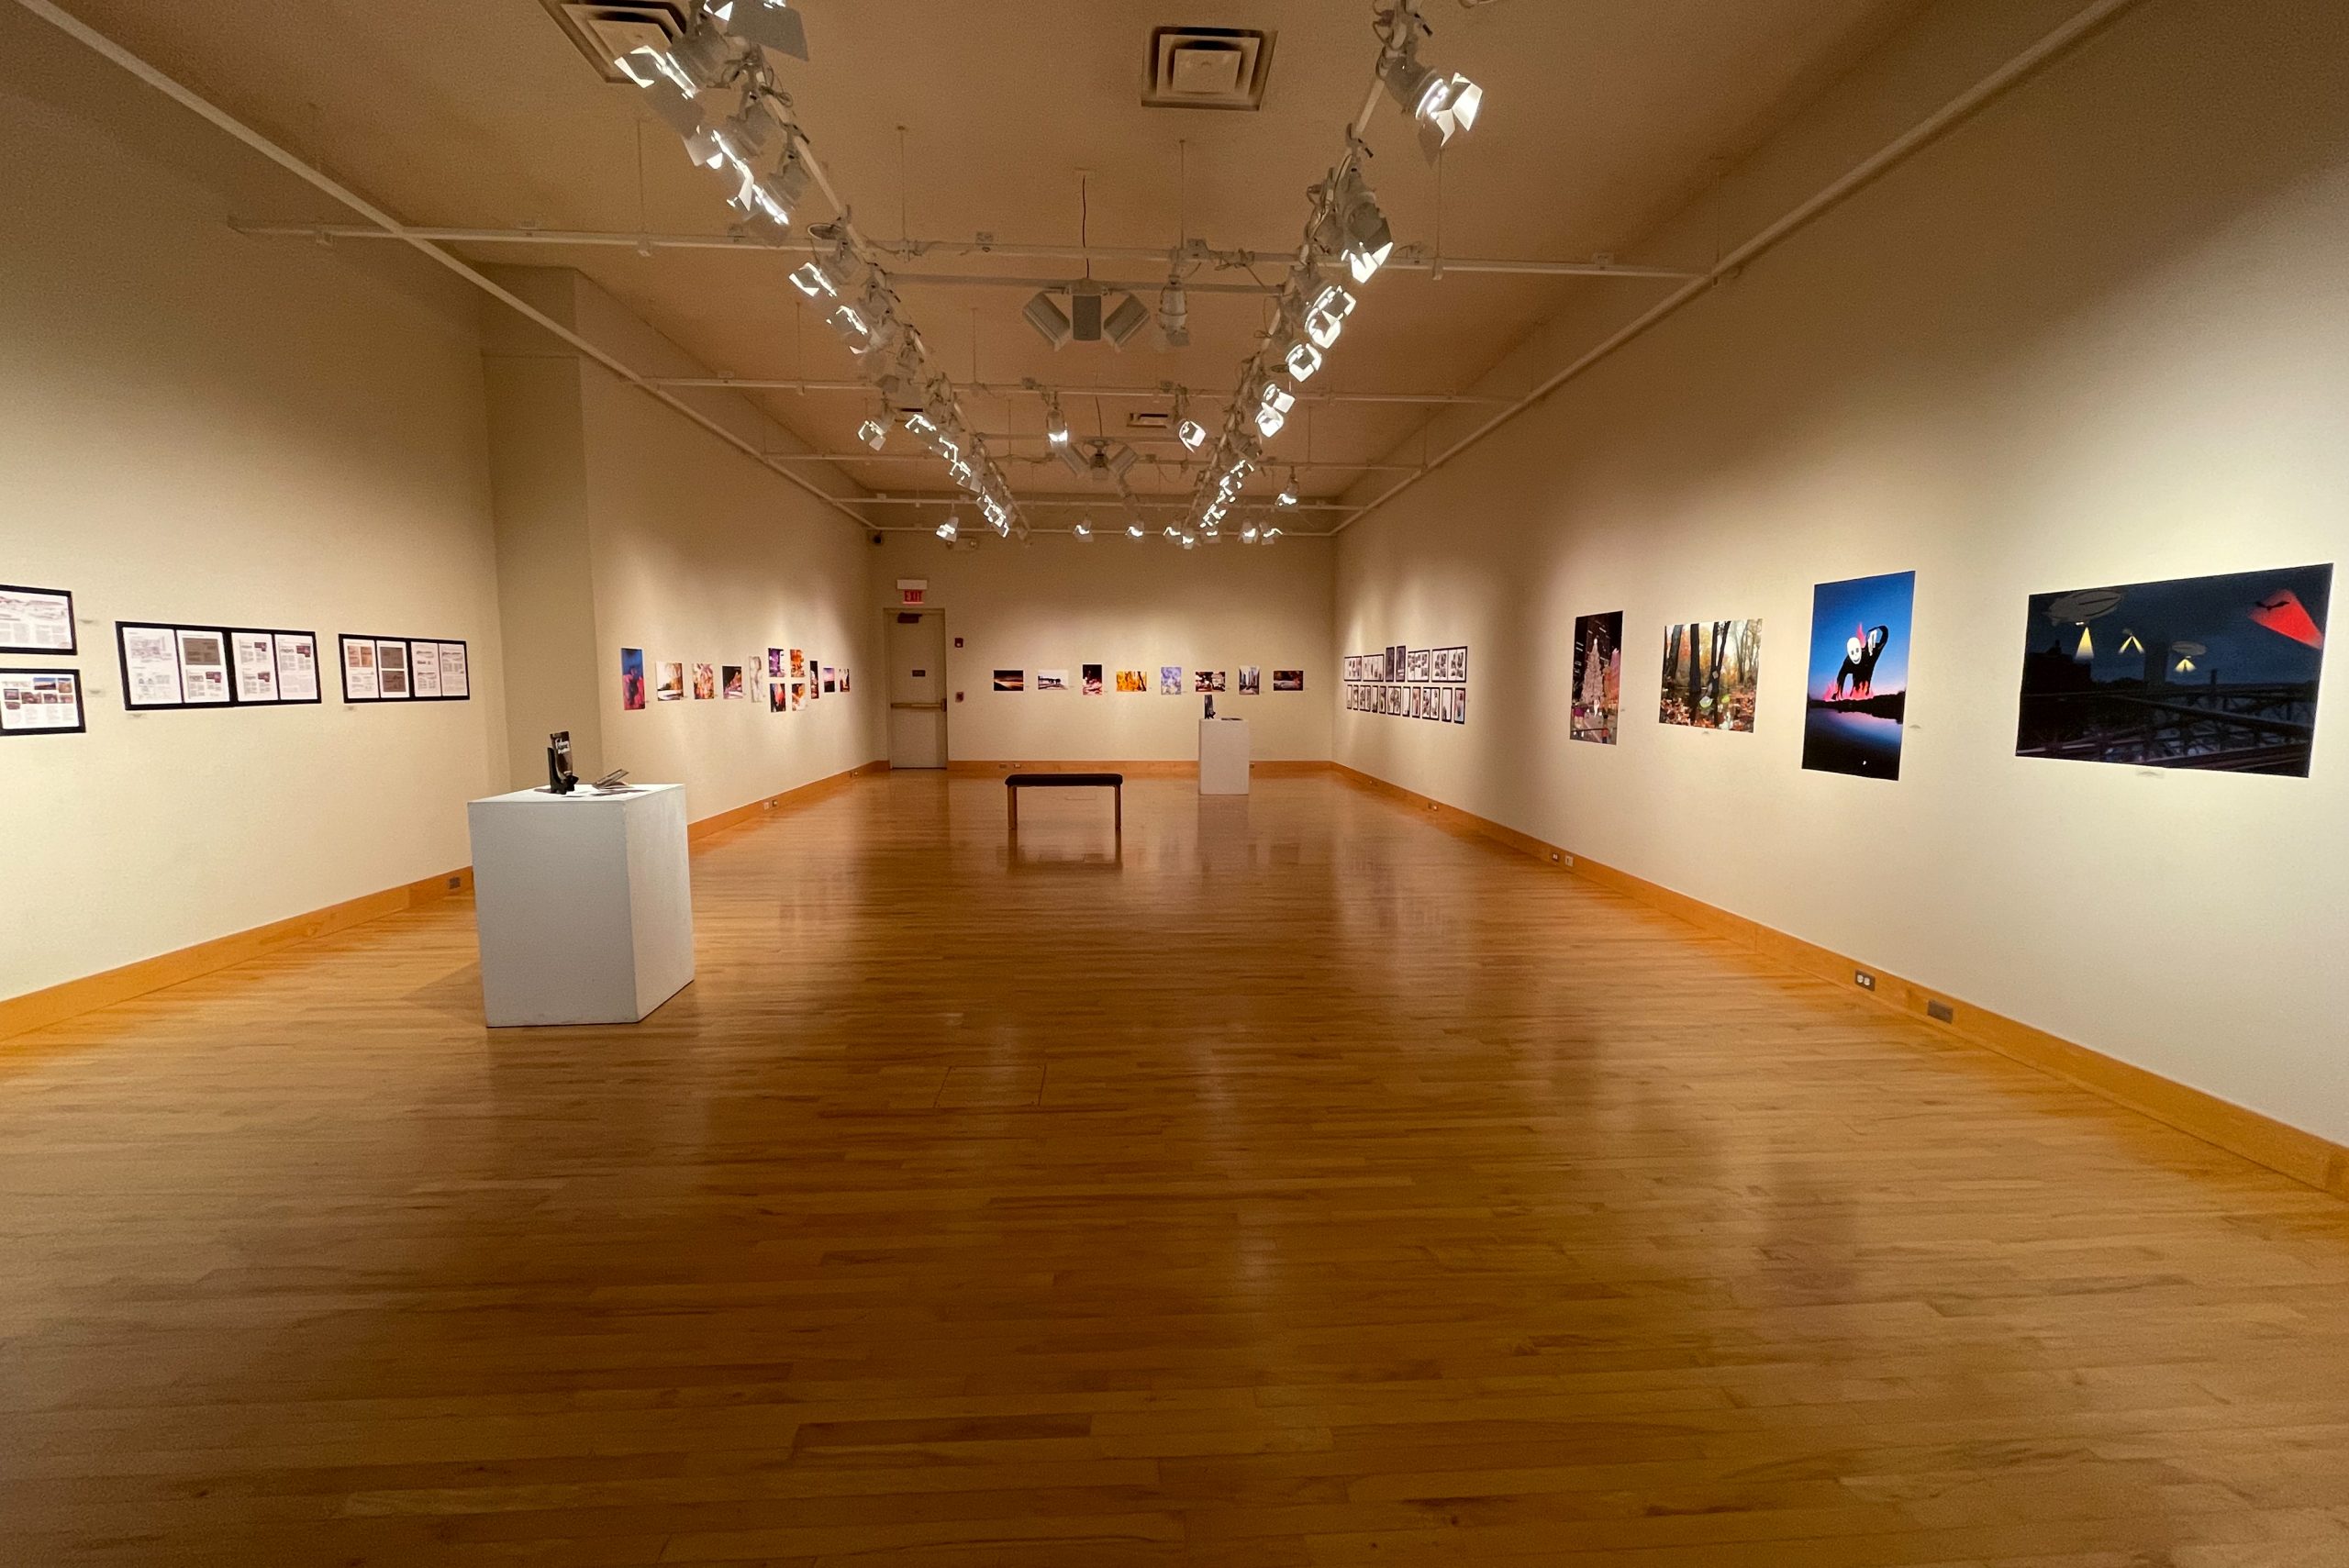 Hershberger Art Gallery